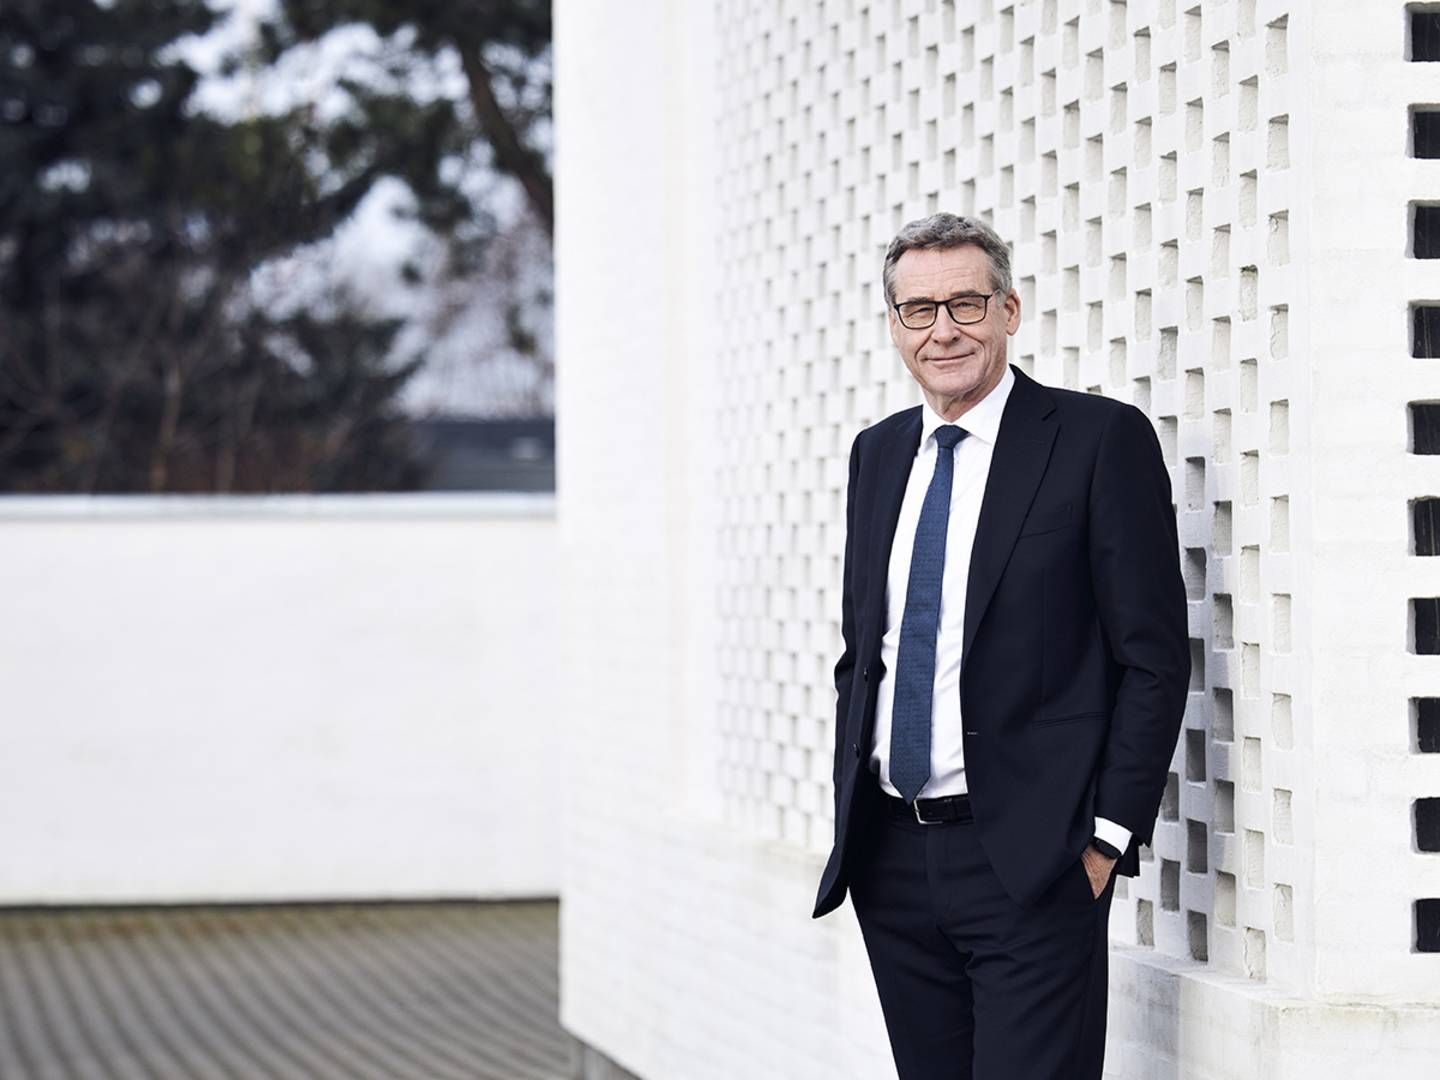 Lars Møller Kristensen, adm. direktør i Djurslands Bank, frygter ligesom flere af landets bankdirektører, at et økonomisk tilbageslag kan ramme Danmark. | Foto: Djurslands Bank / PR